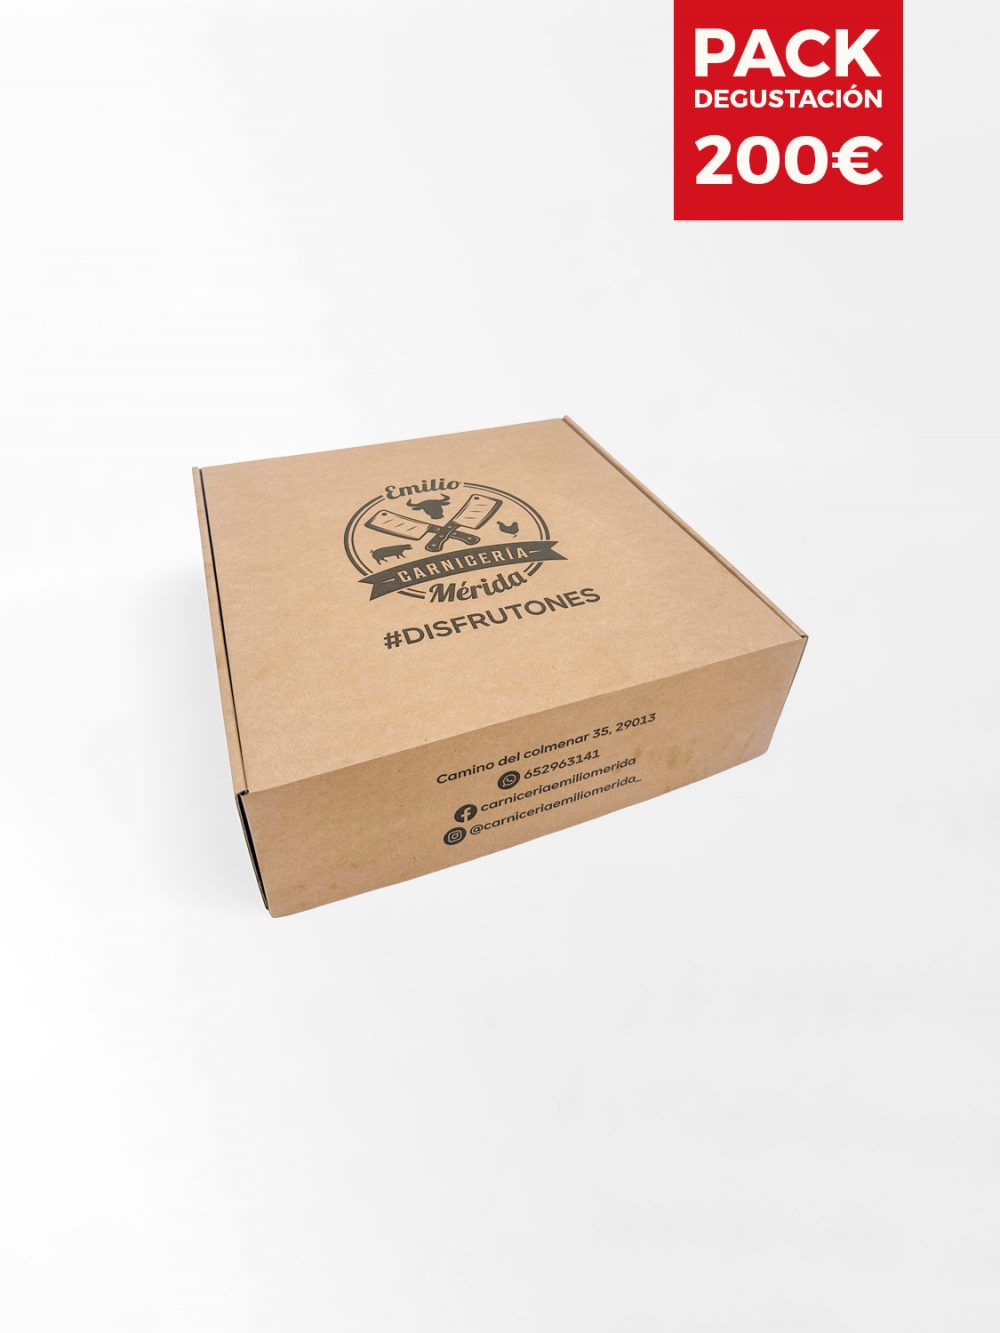 Pack Degustación - 200€ (Incluye 500gr de Wagyu Japonés)